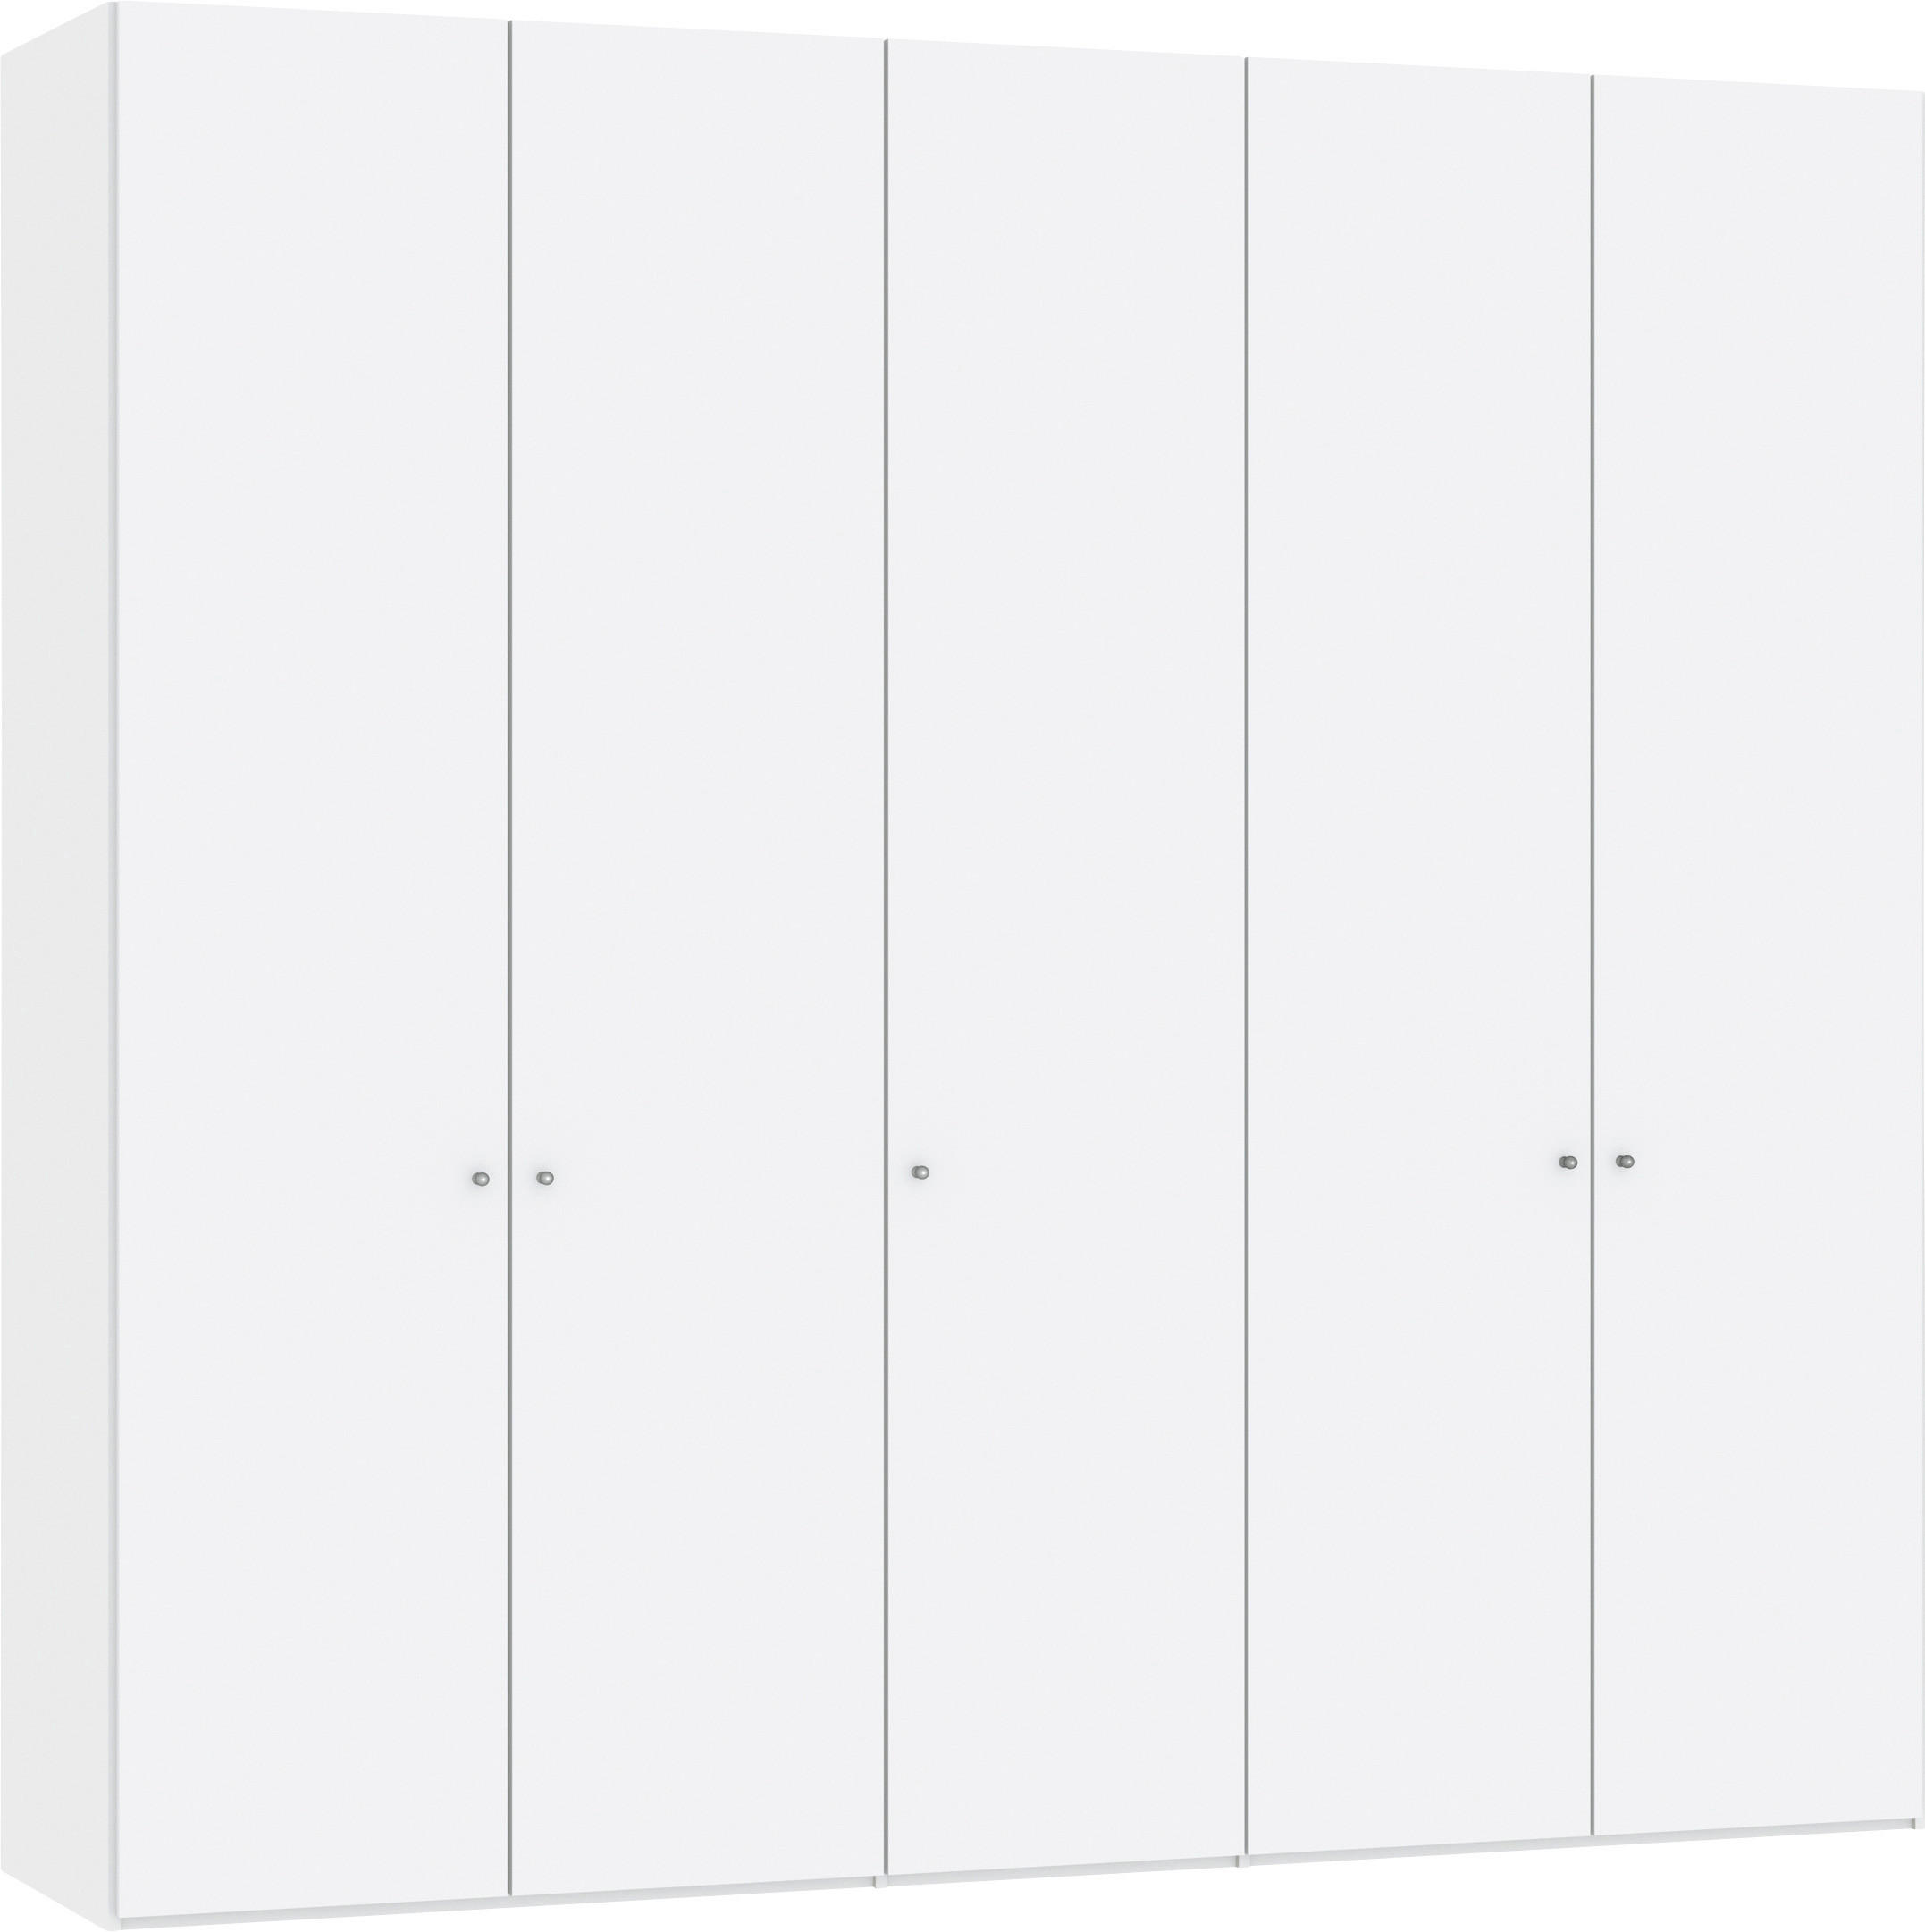 DREHTÜRENSCHRANK 5-türig Weiß, Weiß hochglanz  - Weiß hochglanz/Silberfarben, Design, Holzwerkstoff/Metall (253/236/59cm) - Jutzler